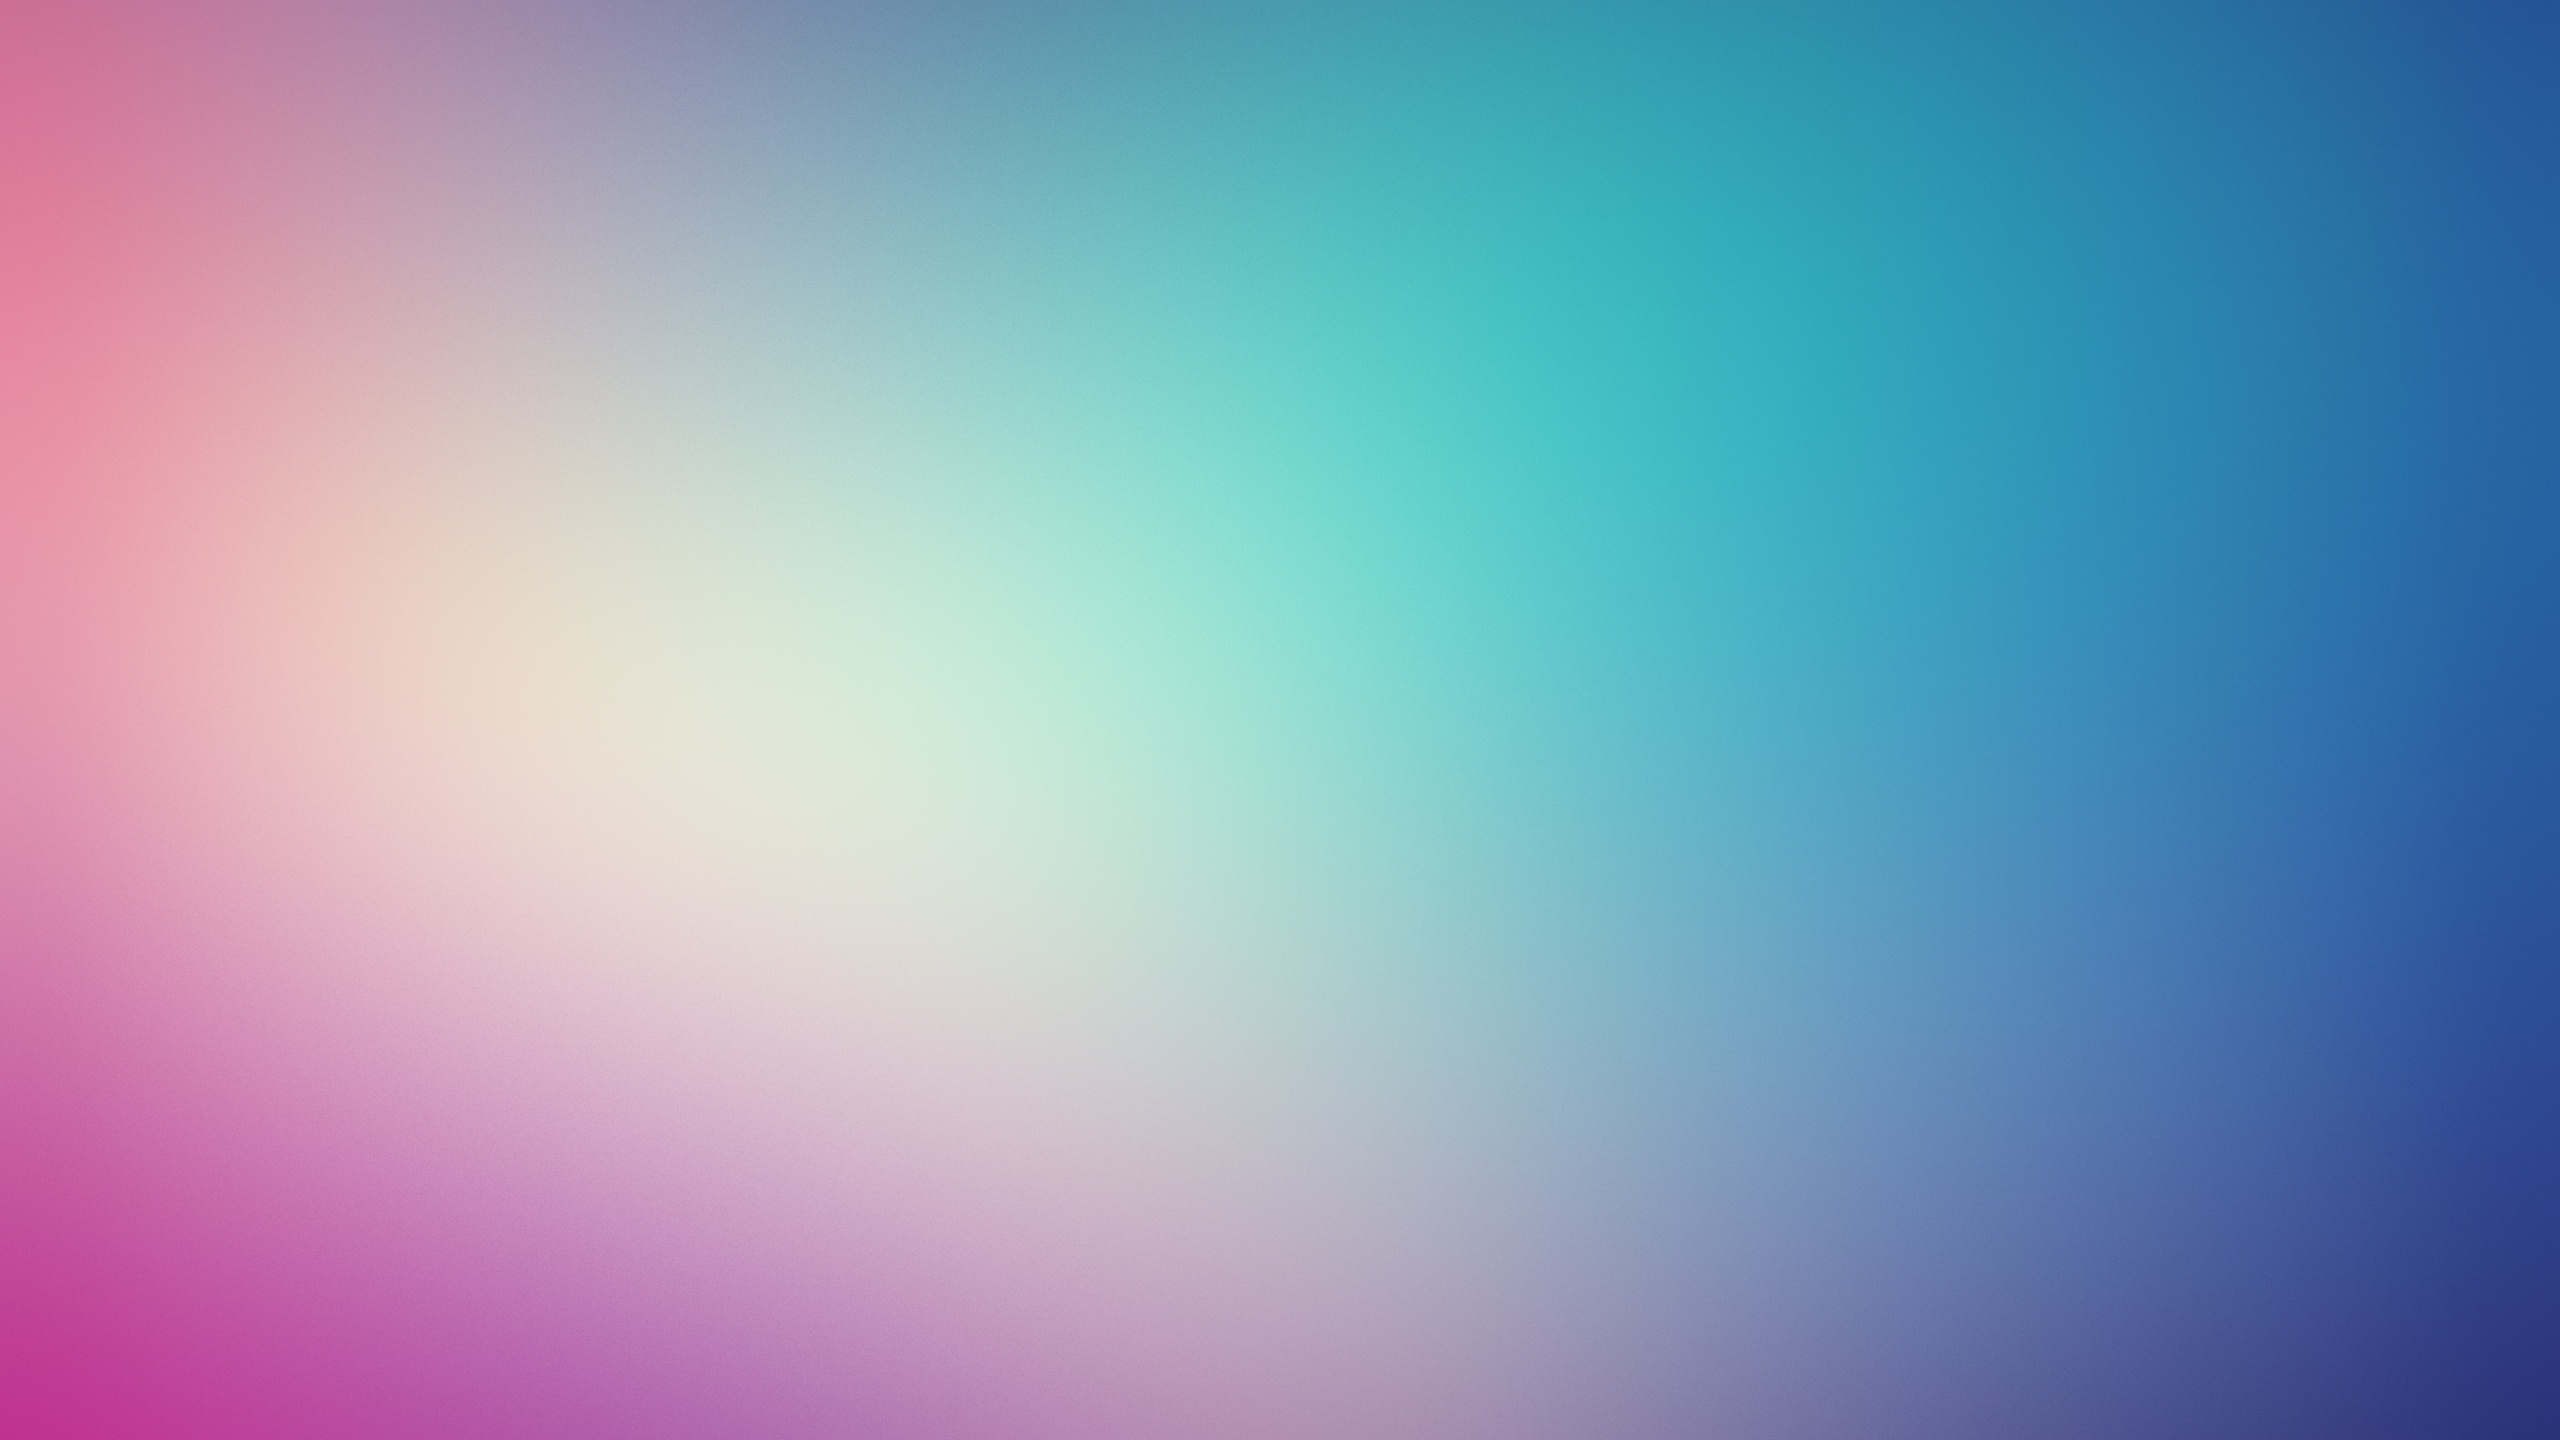 Free HD Light Blue Wallpaper | PixelsTalk.Net